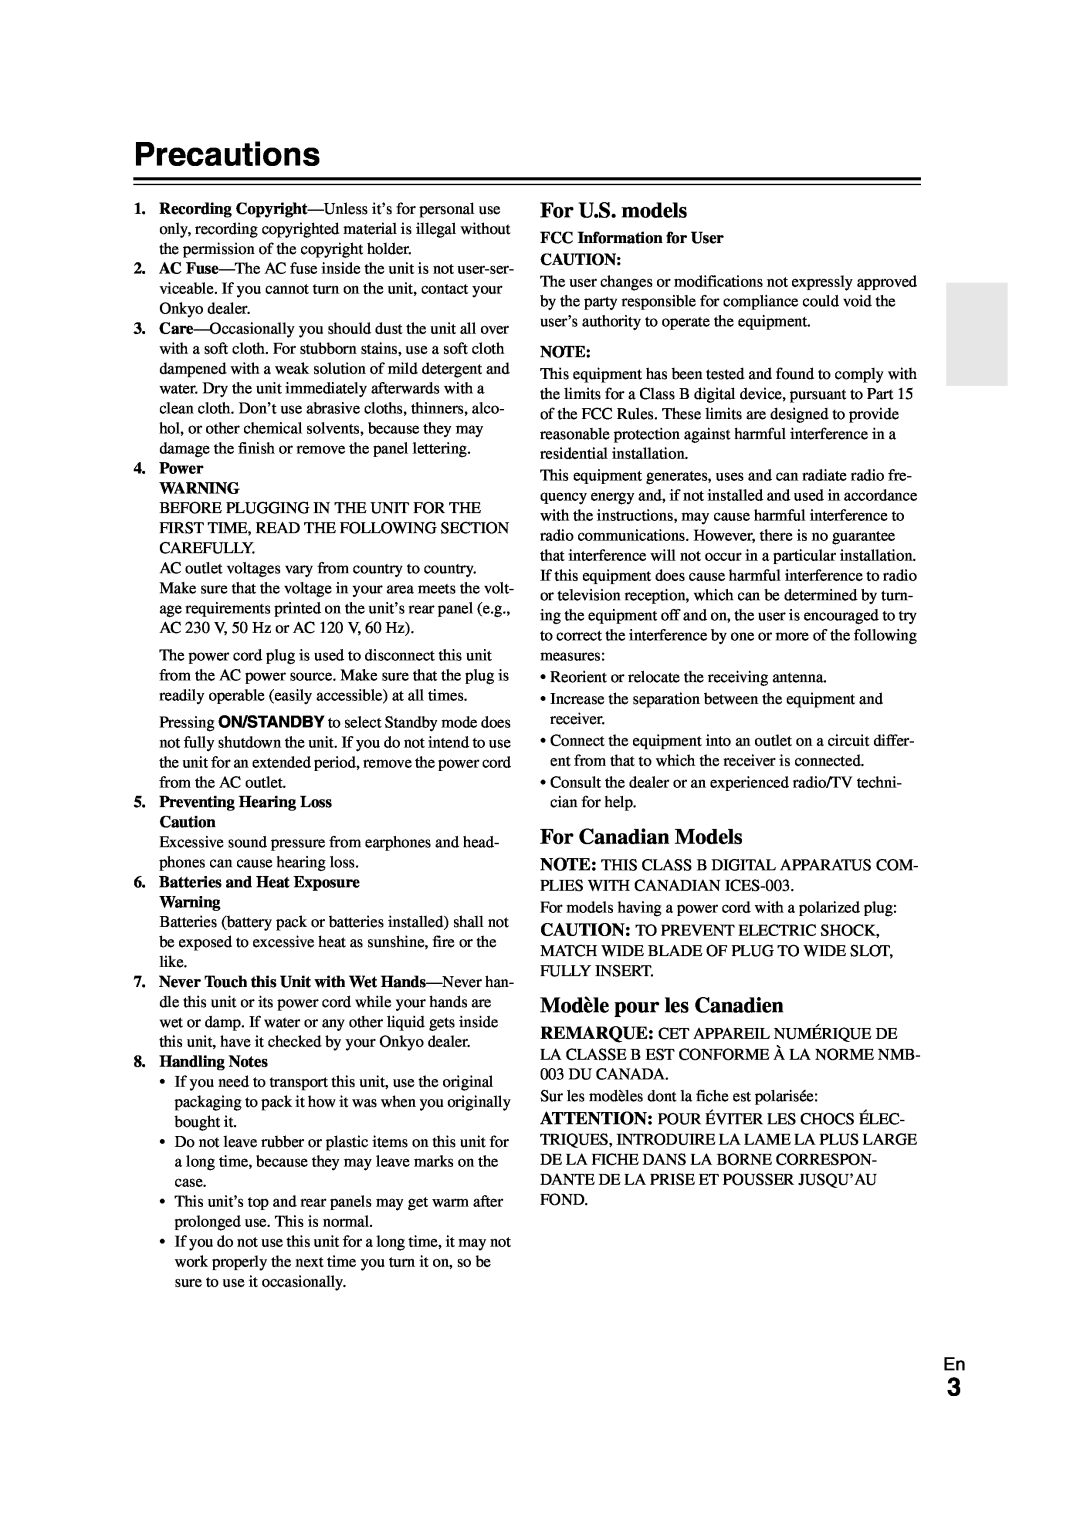 Onkyo HT-S5300 instruction manual Precautions, For U.S. models, For Canadian Models, Modèle pour les Canadien 